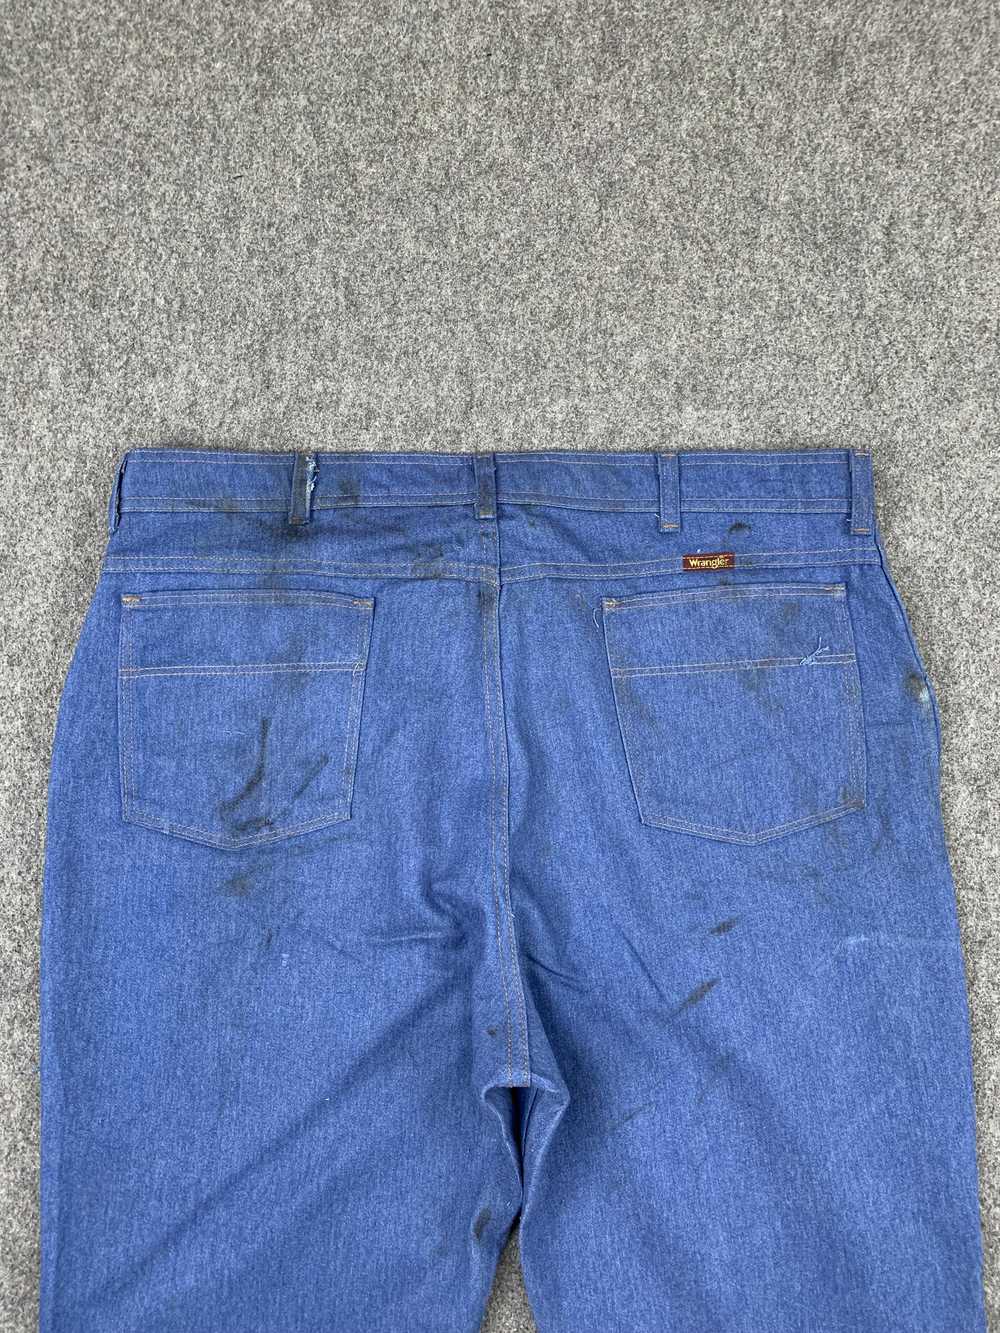 Vintage - Vintage Wrangler Blue Denim Jeans - image 4